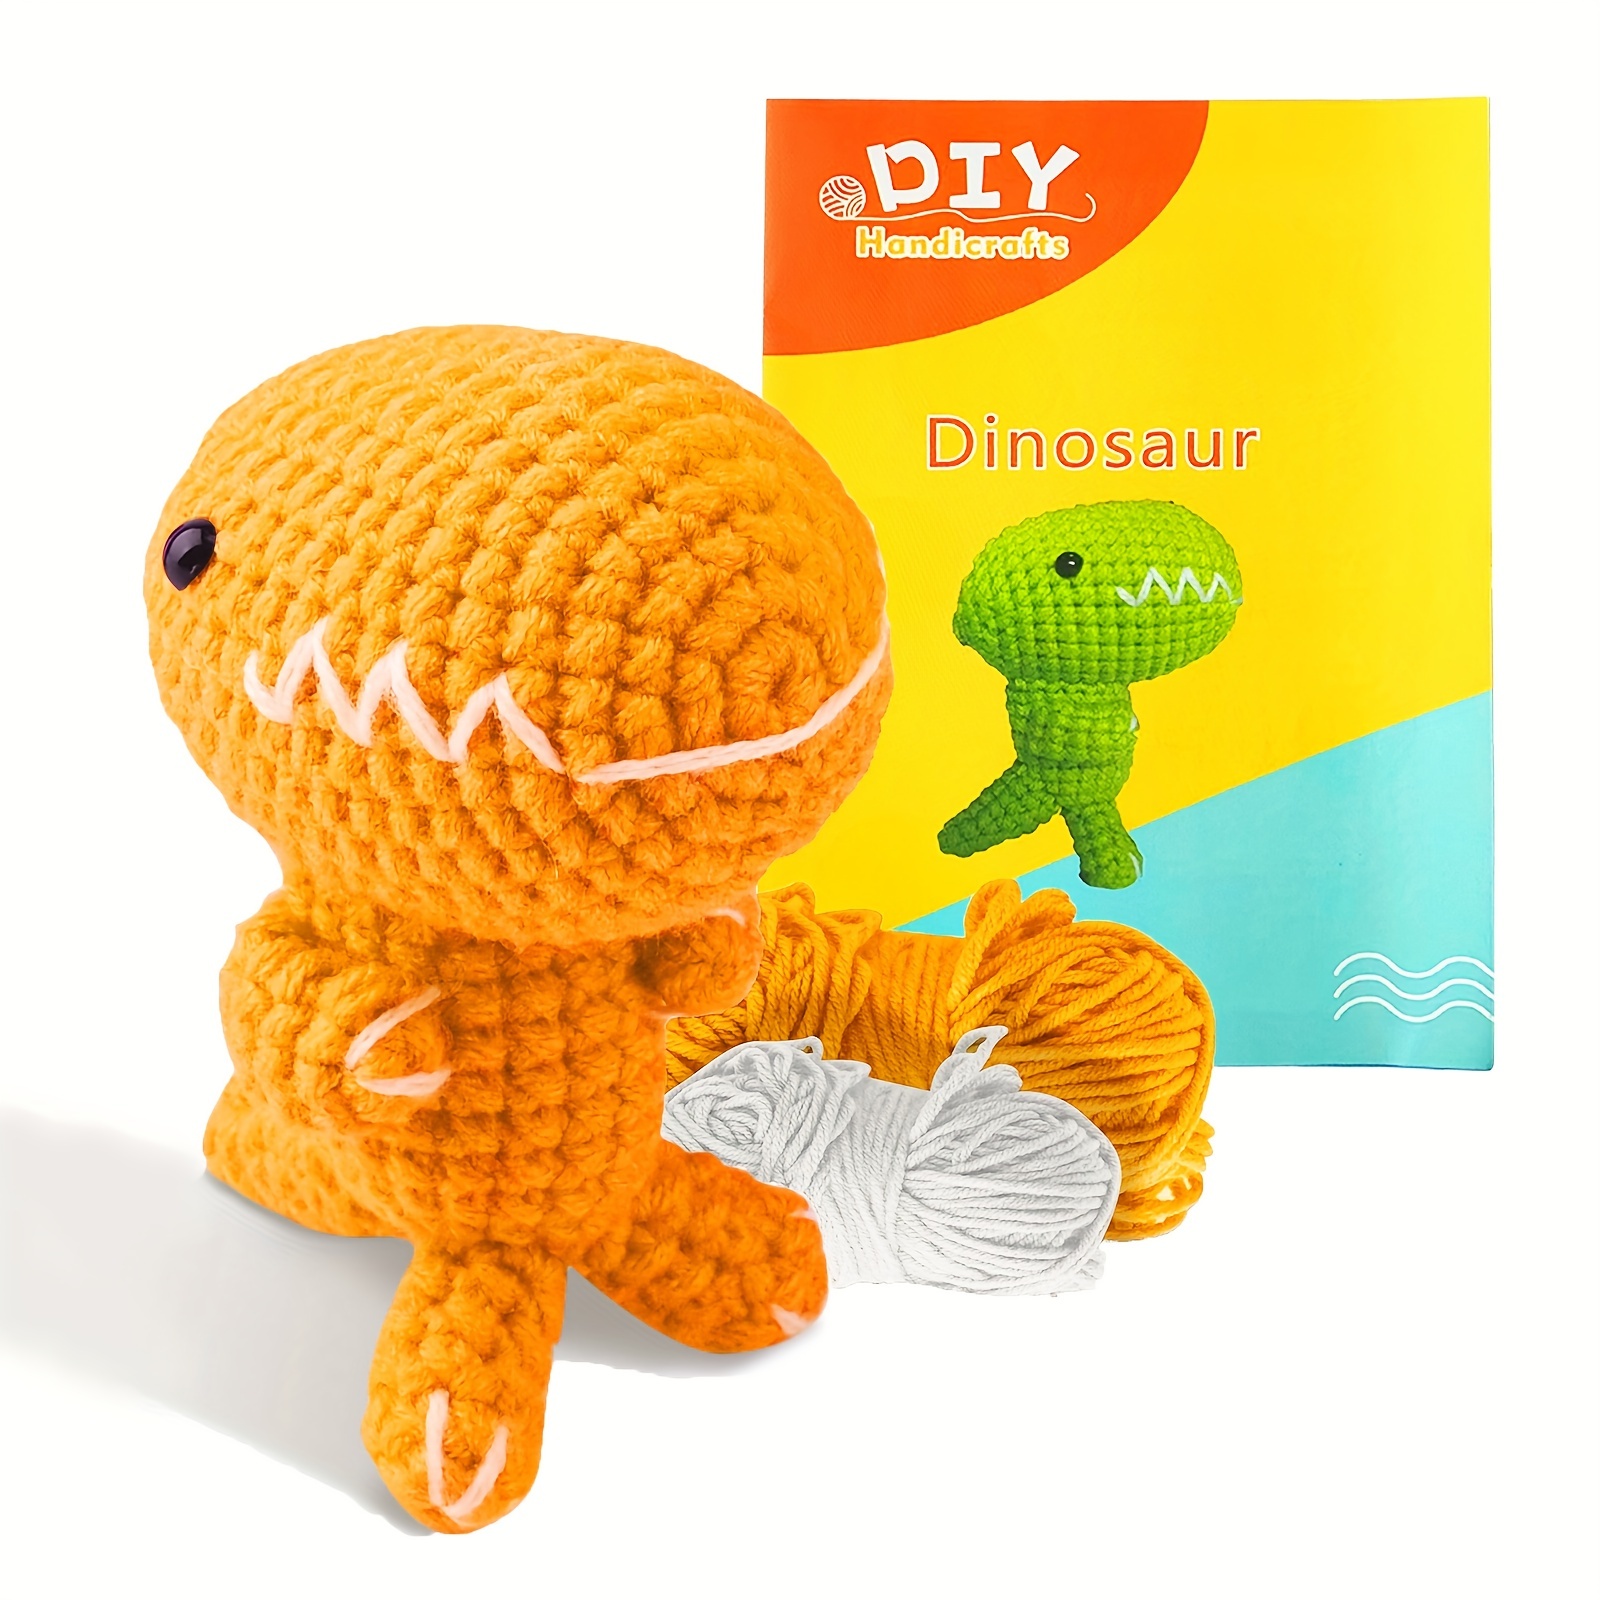 87 Pcs Crochet Kit for Beginners Crochet Starter Kit Crochet Needles Set  with